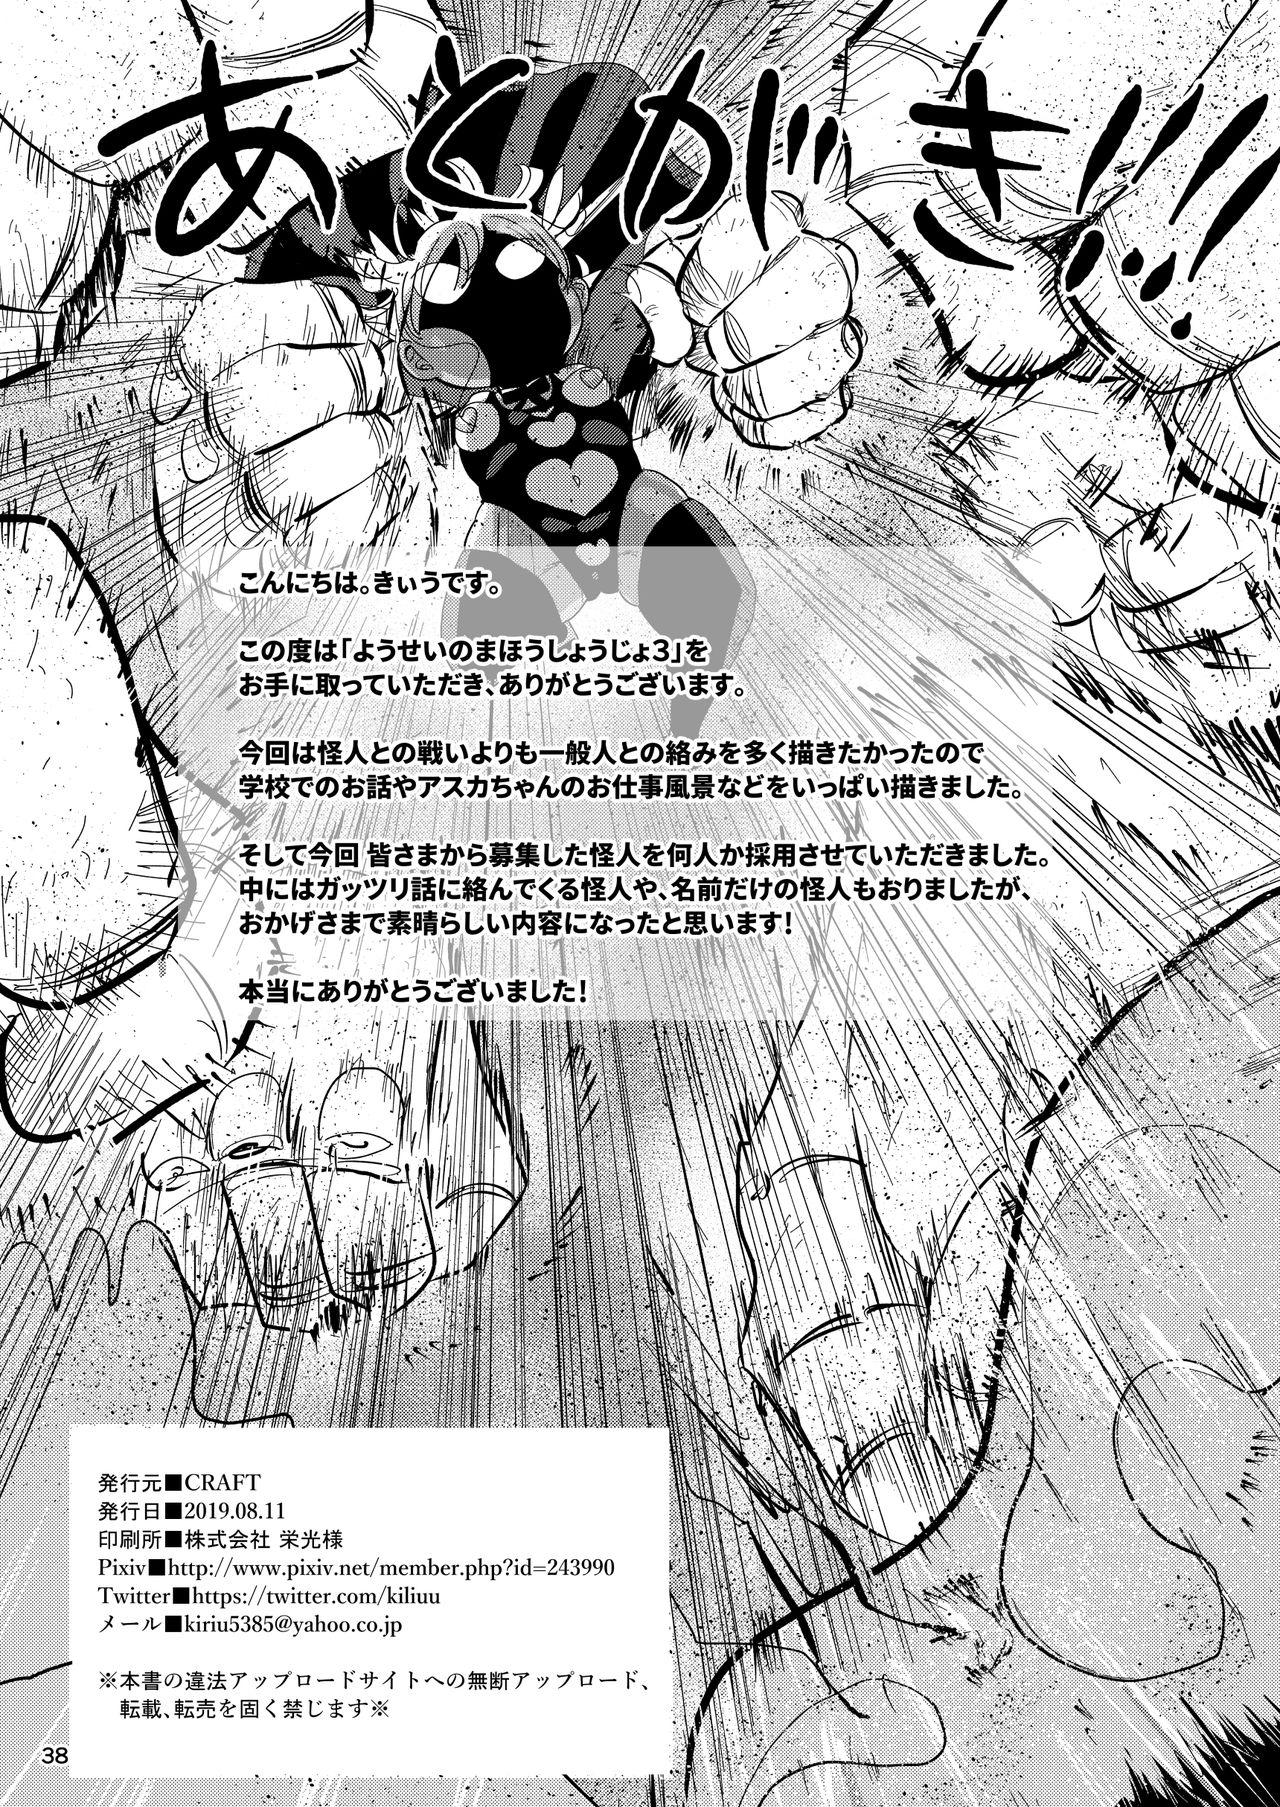 Punished Yousei no Mahou Shoujo 3 - Original Raw - Page 37